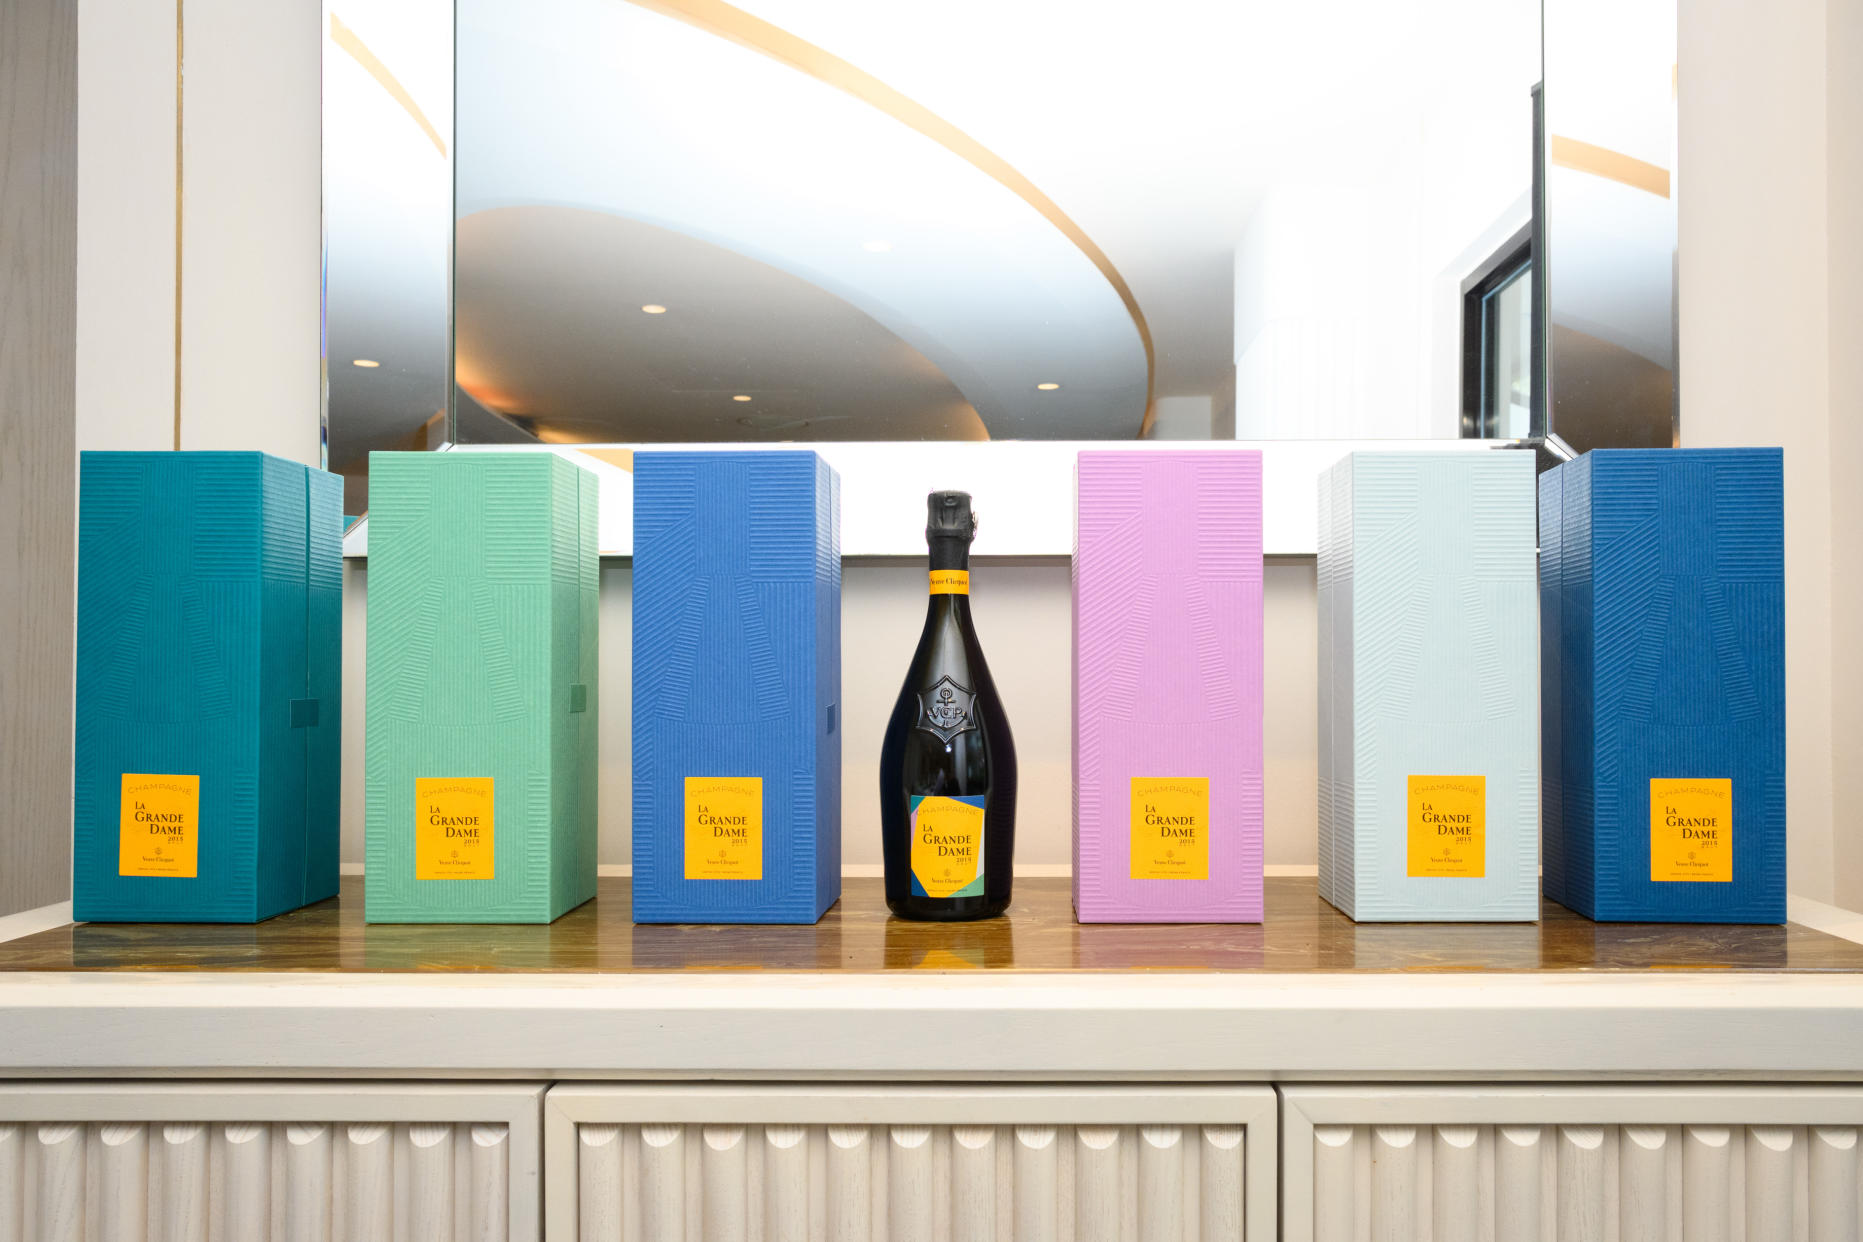 Veuve Clicquot La Grande Dame 2015 Paola Paronetto Gift Box